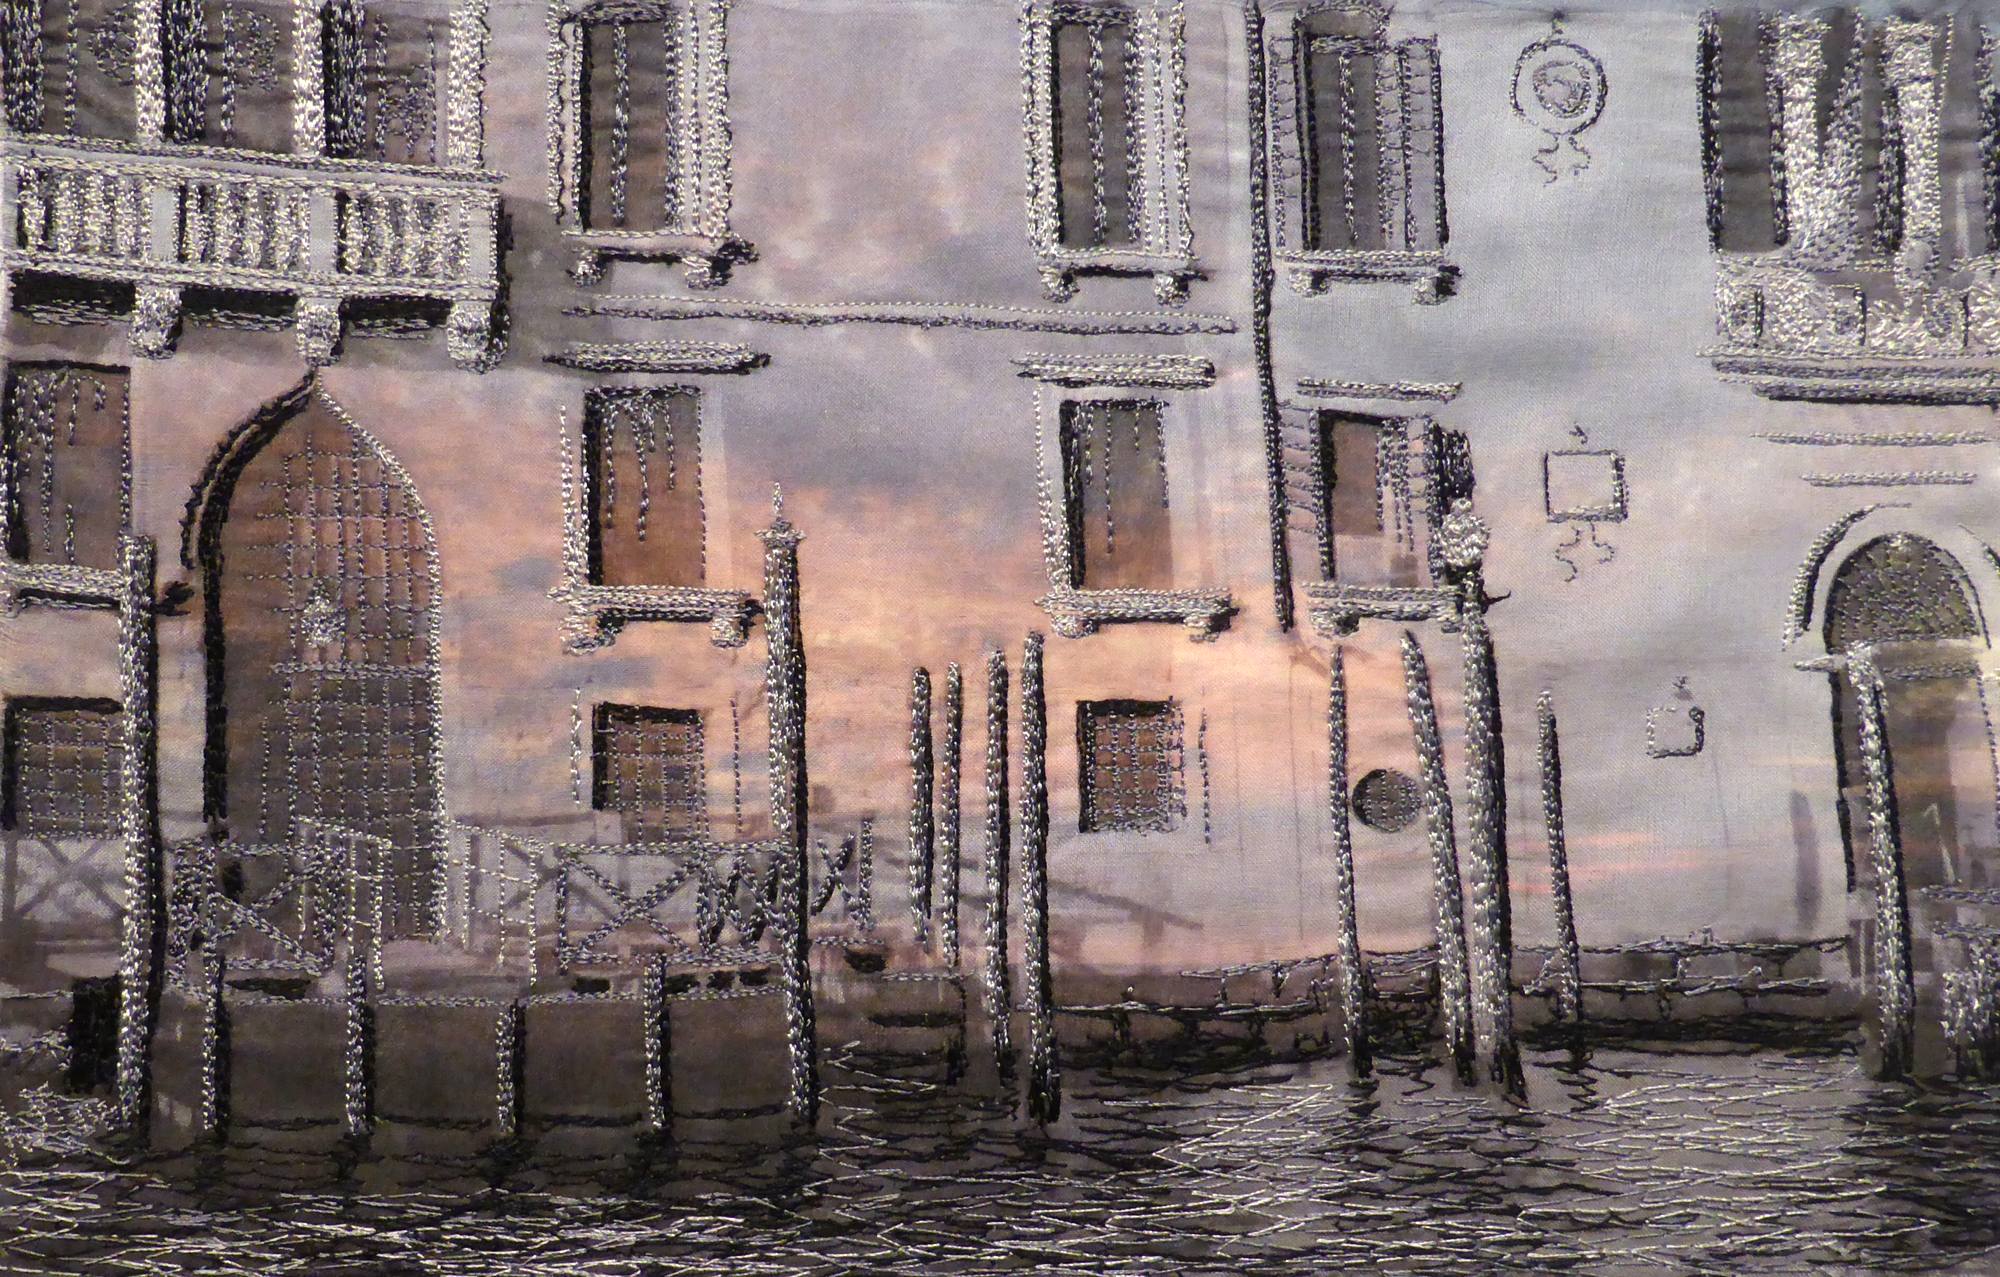 Venice to Broome No 2 (2014) by Andrea McCallum